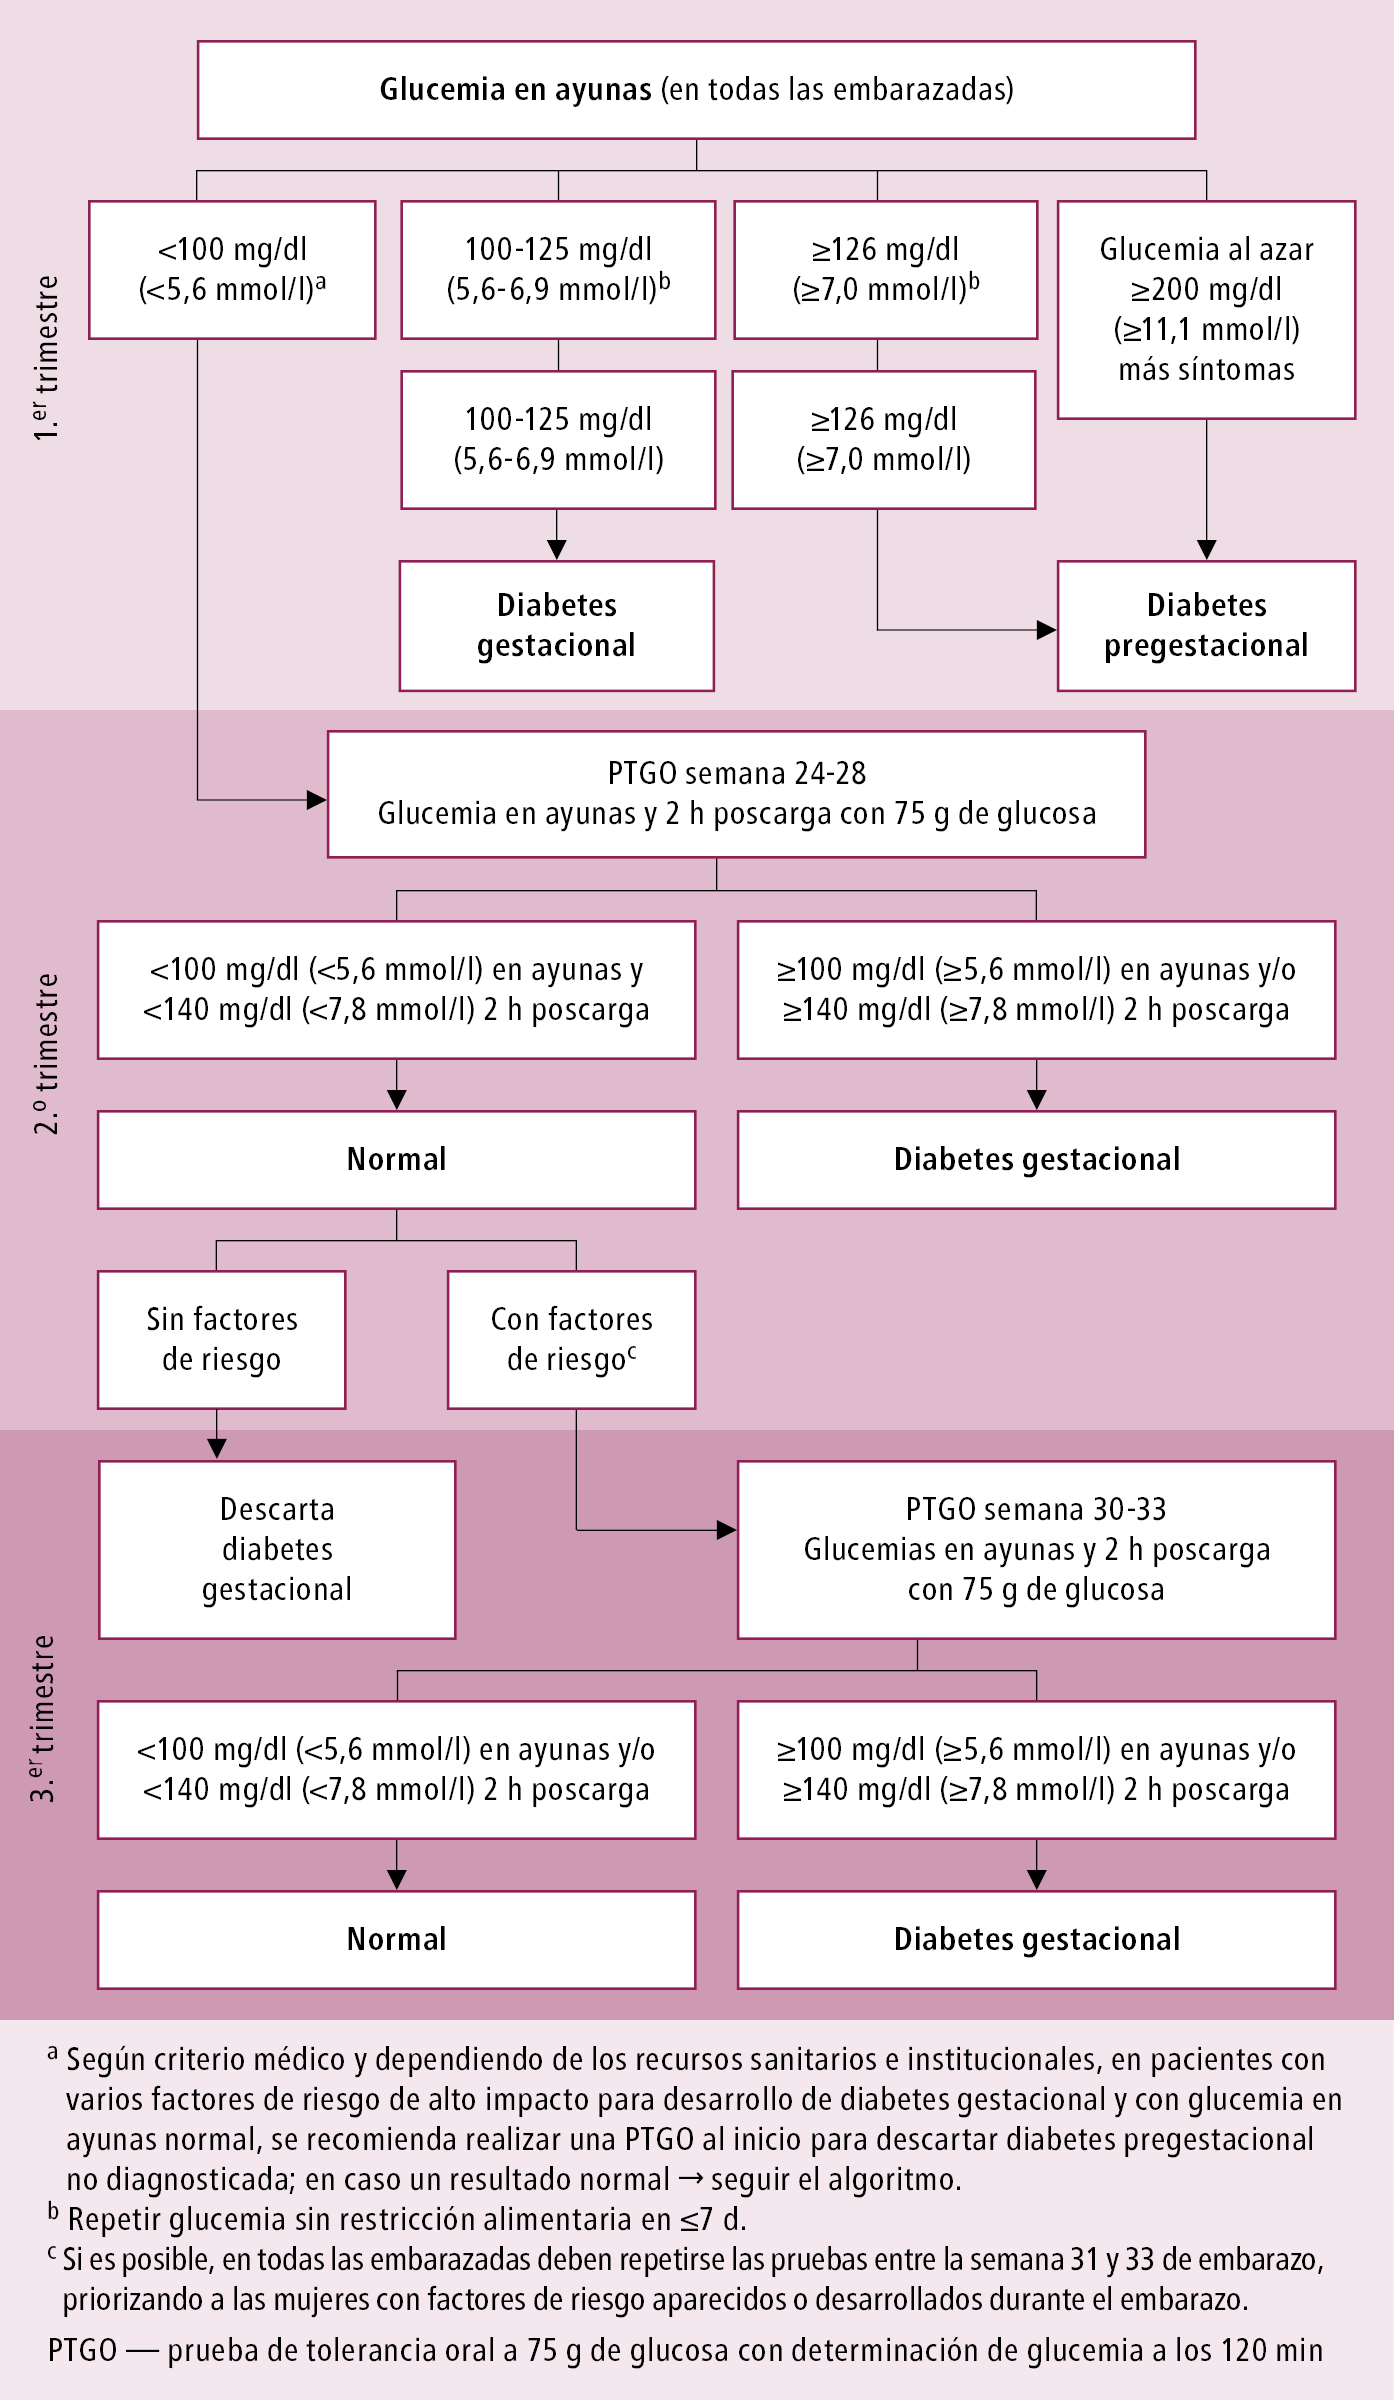    Fig. 14.2-1.  Algoritmo de diagnóstico de diabetes gestacional según la ALAD 2016 (adaptado de las Guías de Diabetes y Embarazo 2014 de MINSAL y adoptado por la Sociedad Argentina de Diabetes) 